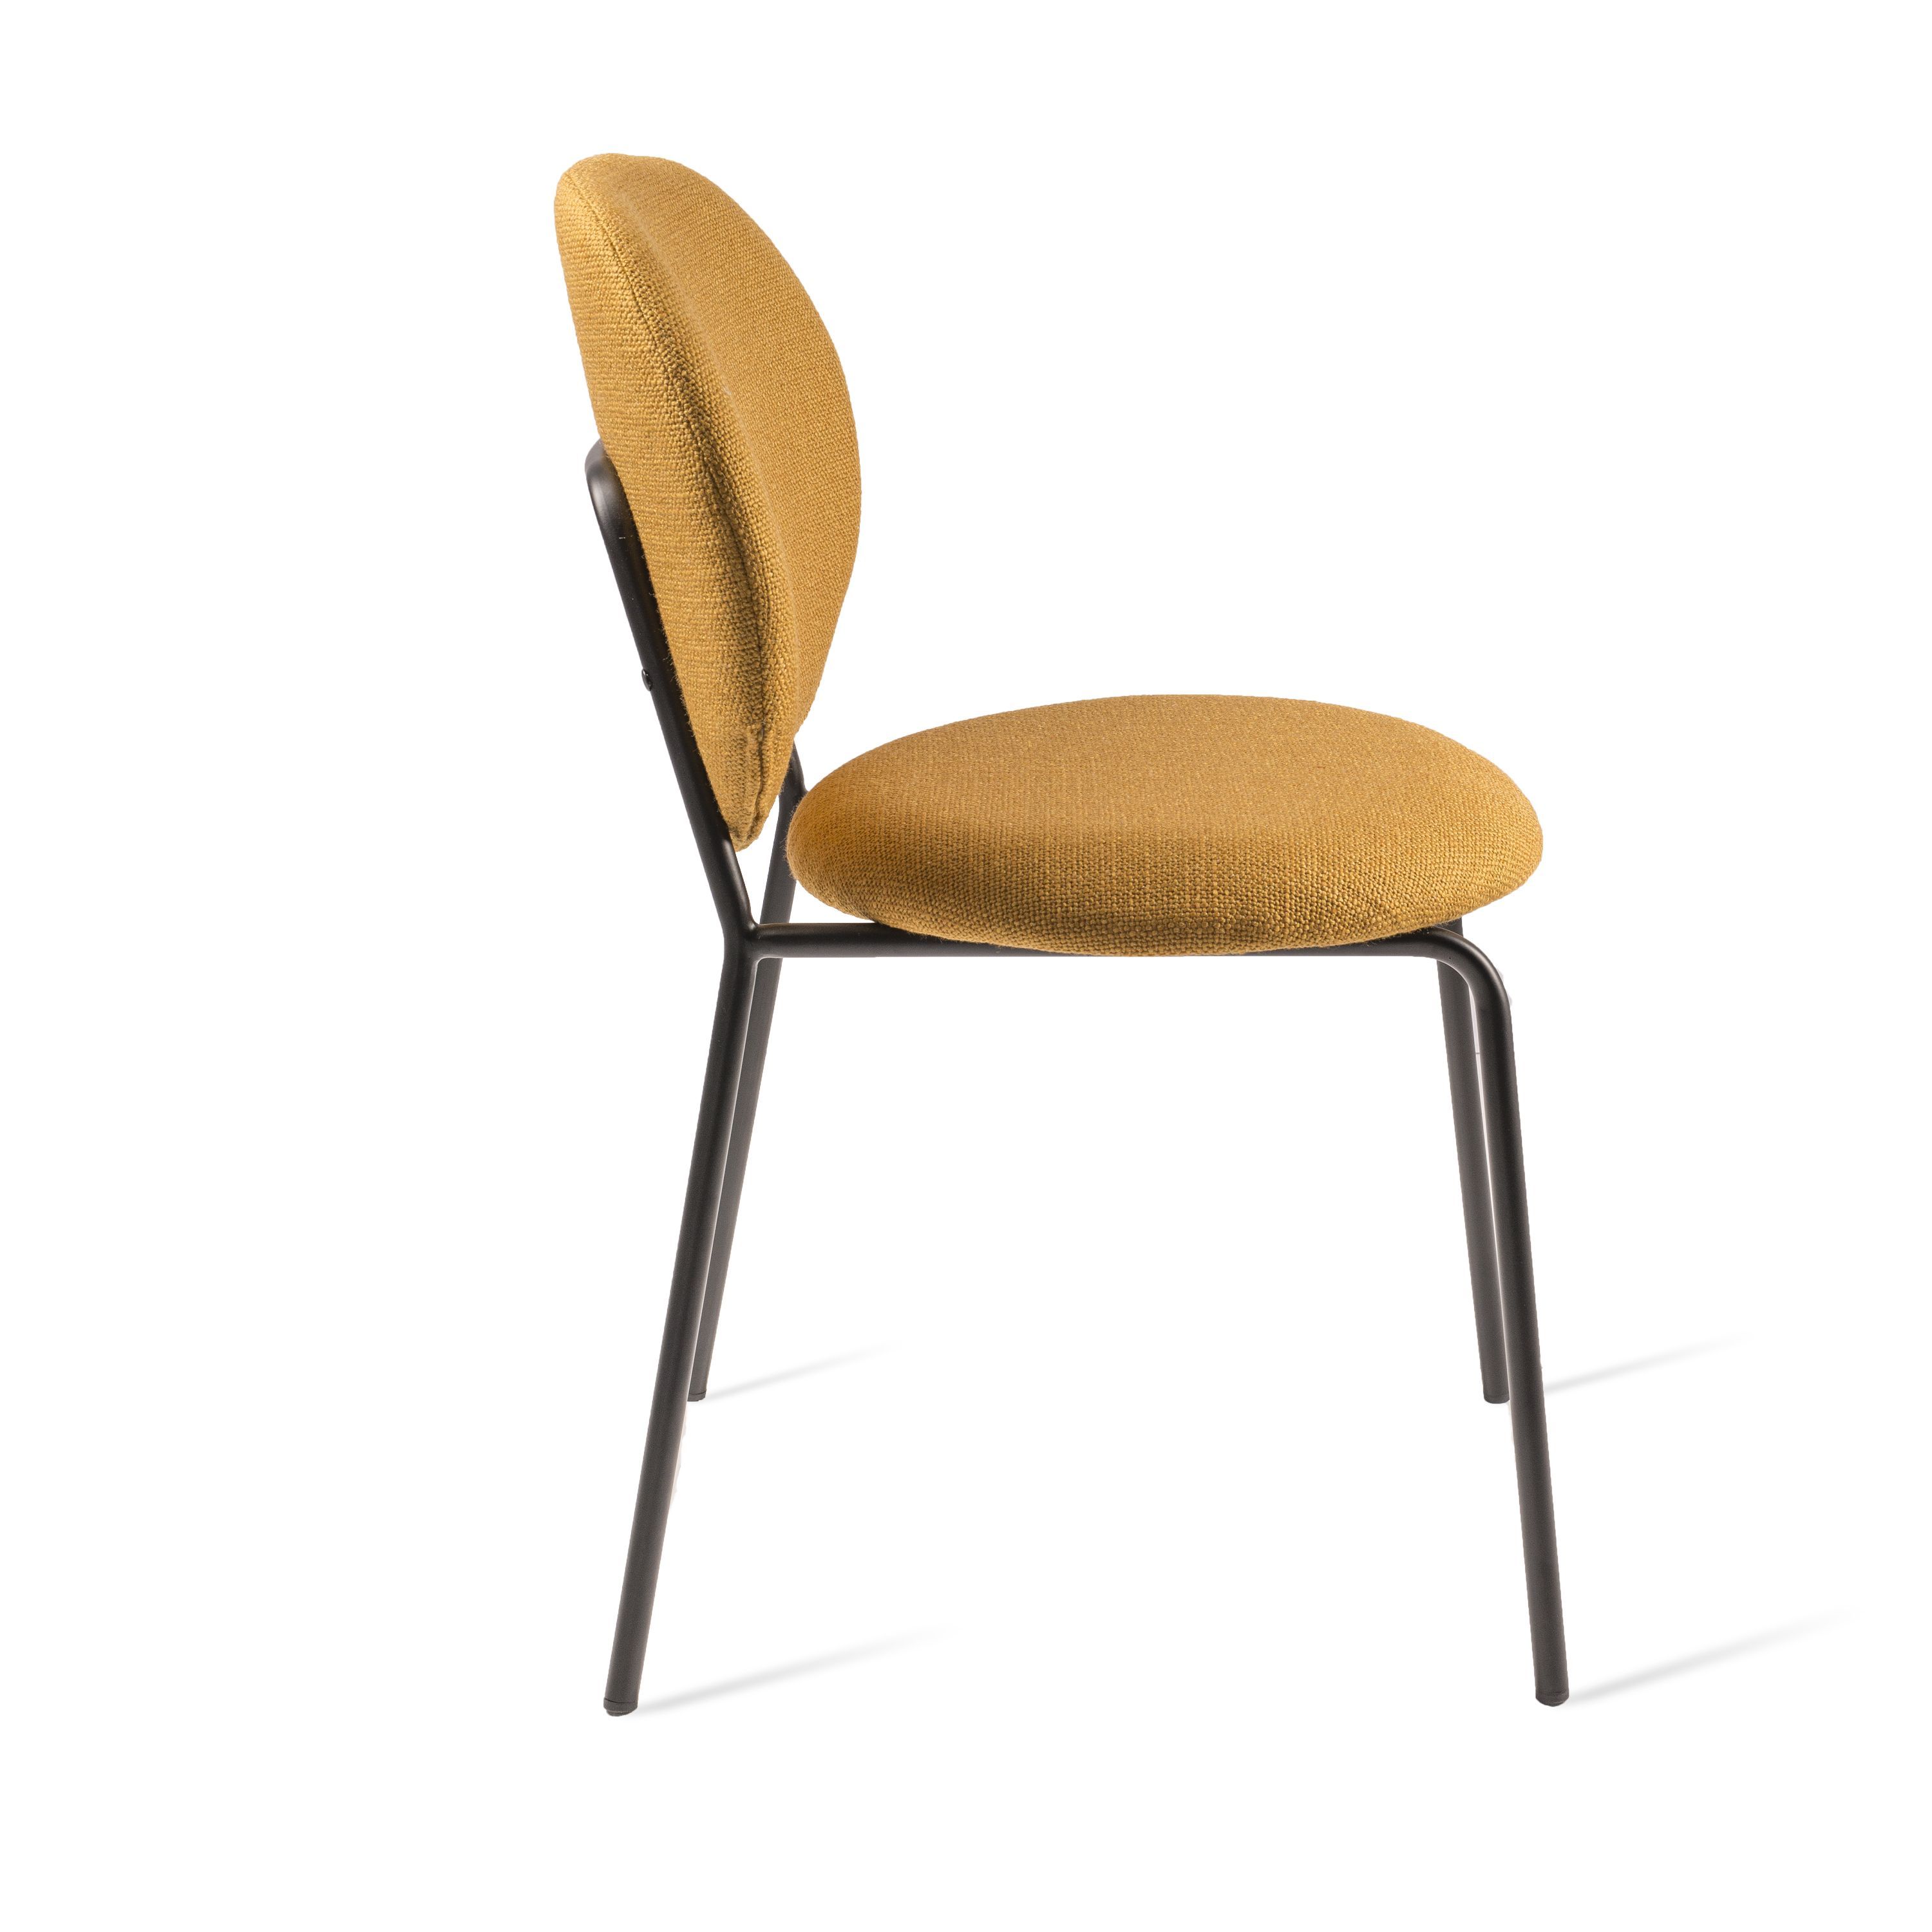 Ochre chair by Pols Potten